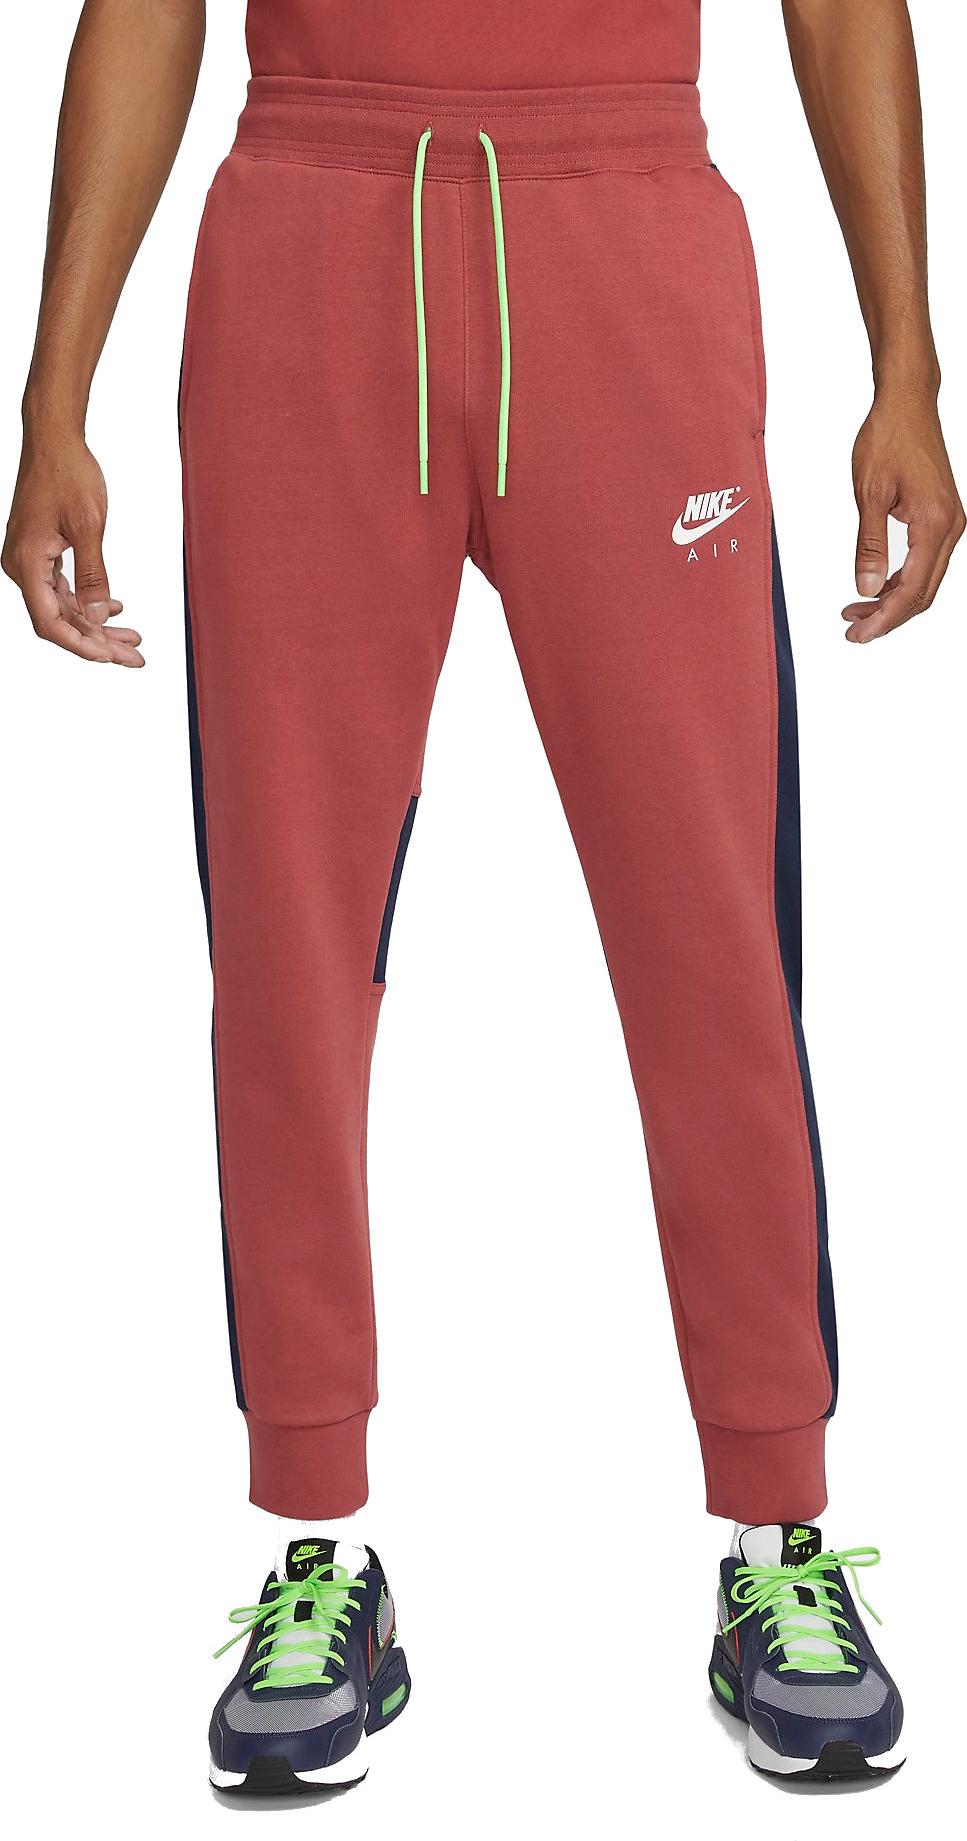 Pánské fleecové kalhoty Nike Air Brushed